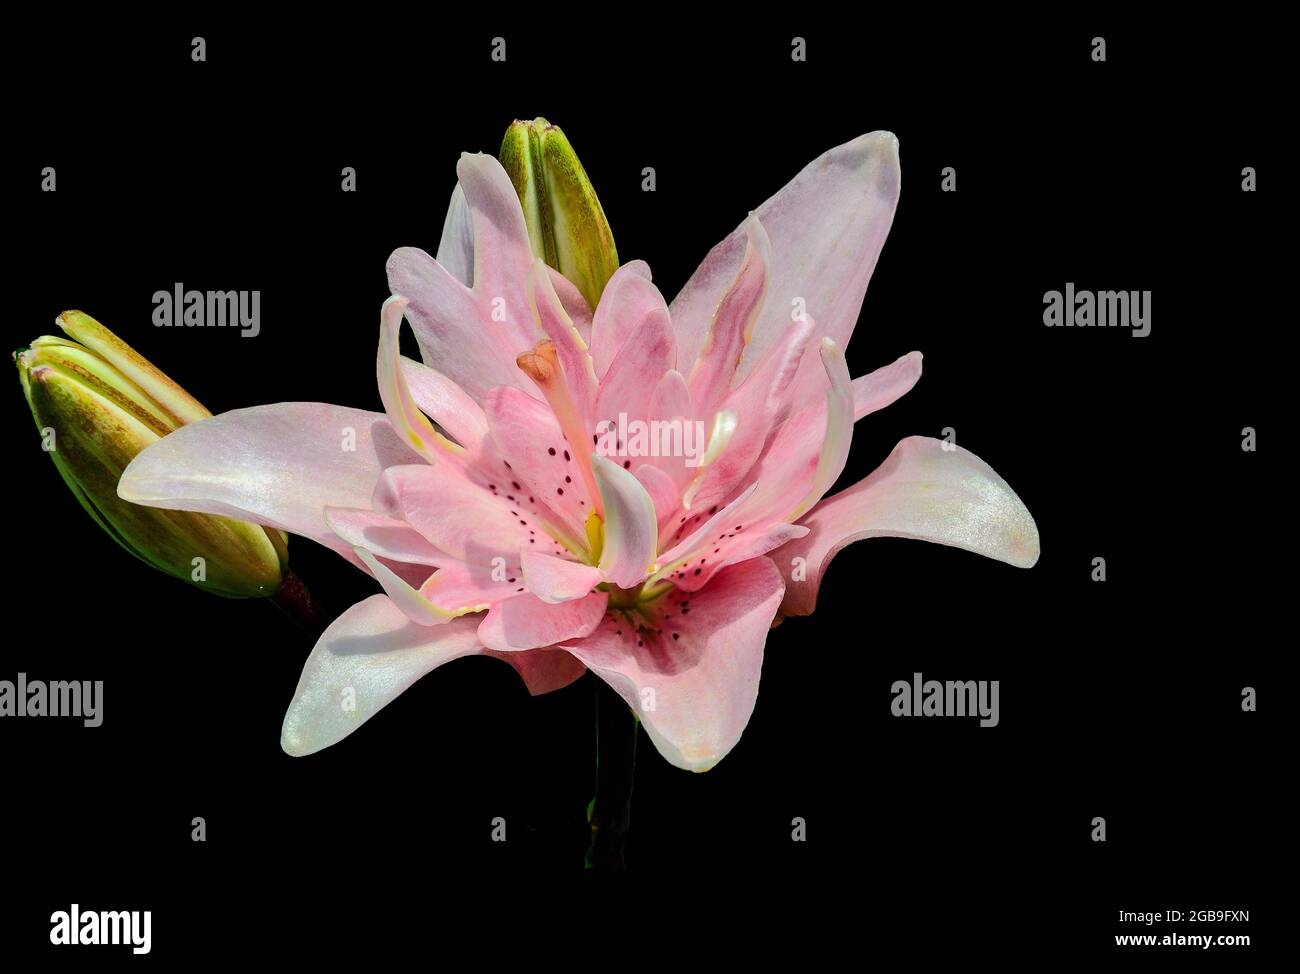 Sanfte und elegante hellrosa Lilienblüte aus nächster Nähe, auf schwarzem Hintergrund isoliert. Einzelne schöne orientalische lilium-Blütensorte Elodie mit Knospen. Stockfoto